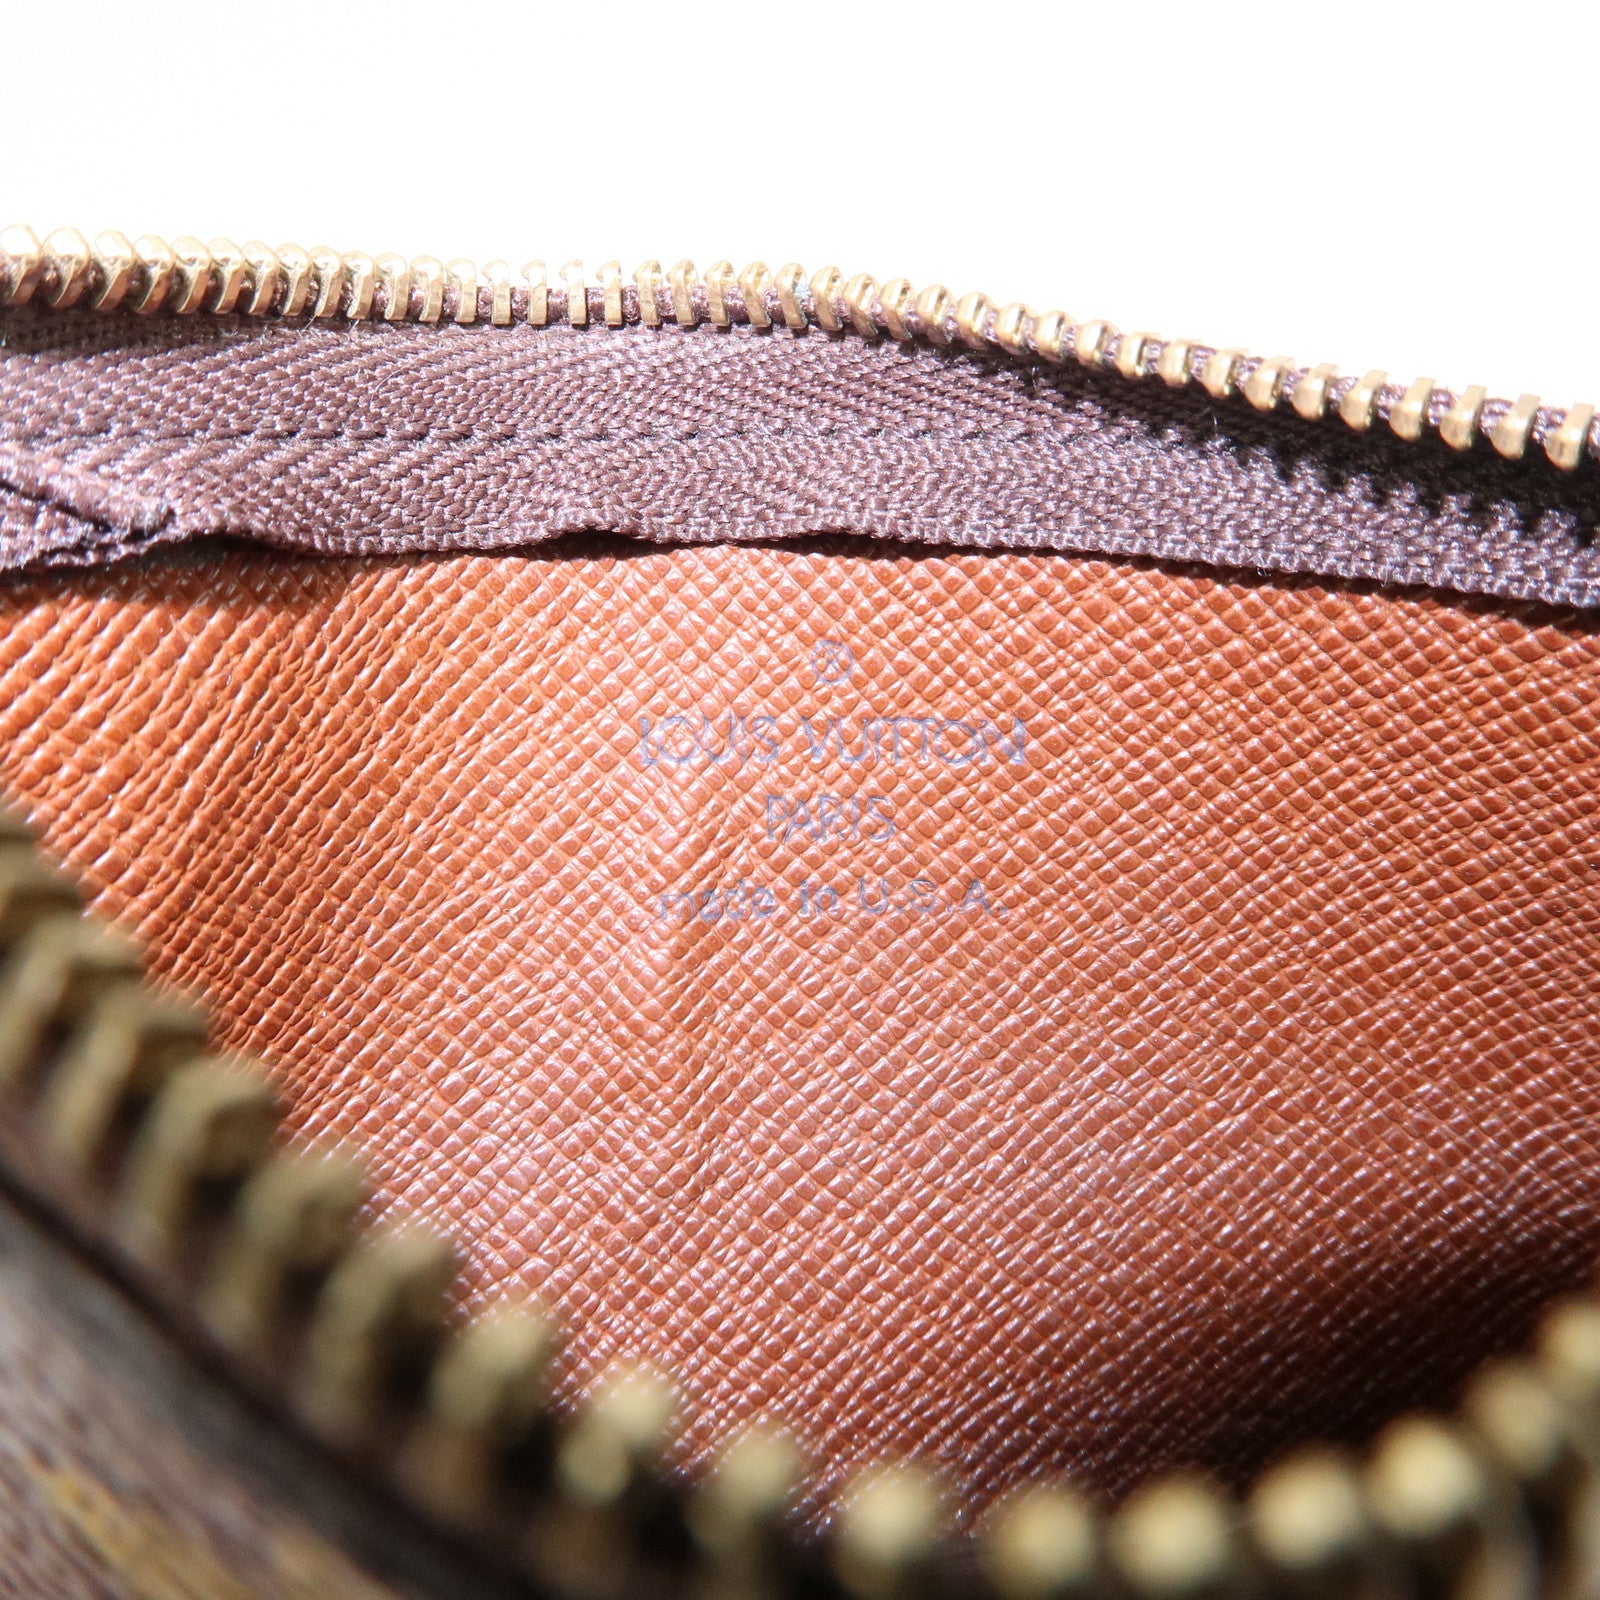 Louis-Vuitton-Monogram-Pochette-Cles-Coin-Case-Brown-M62650 – dct